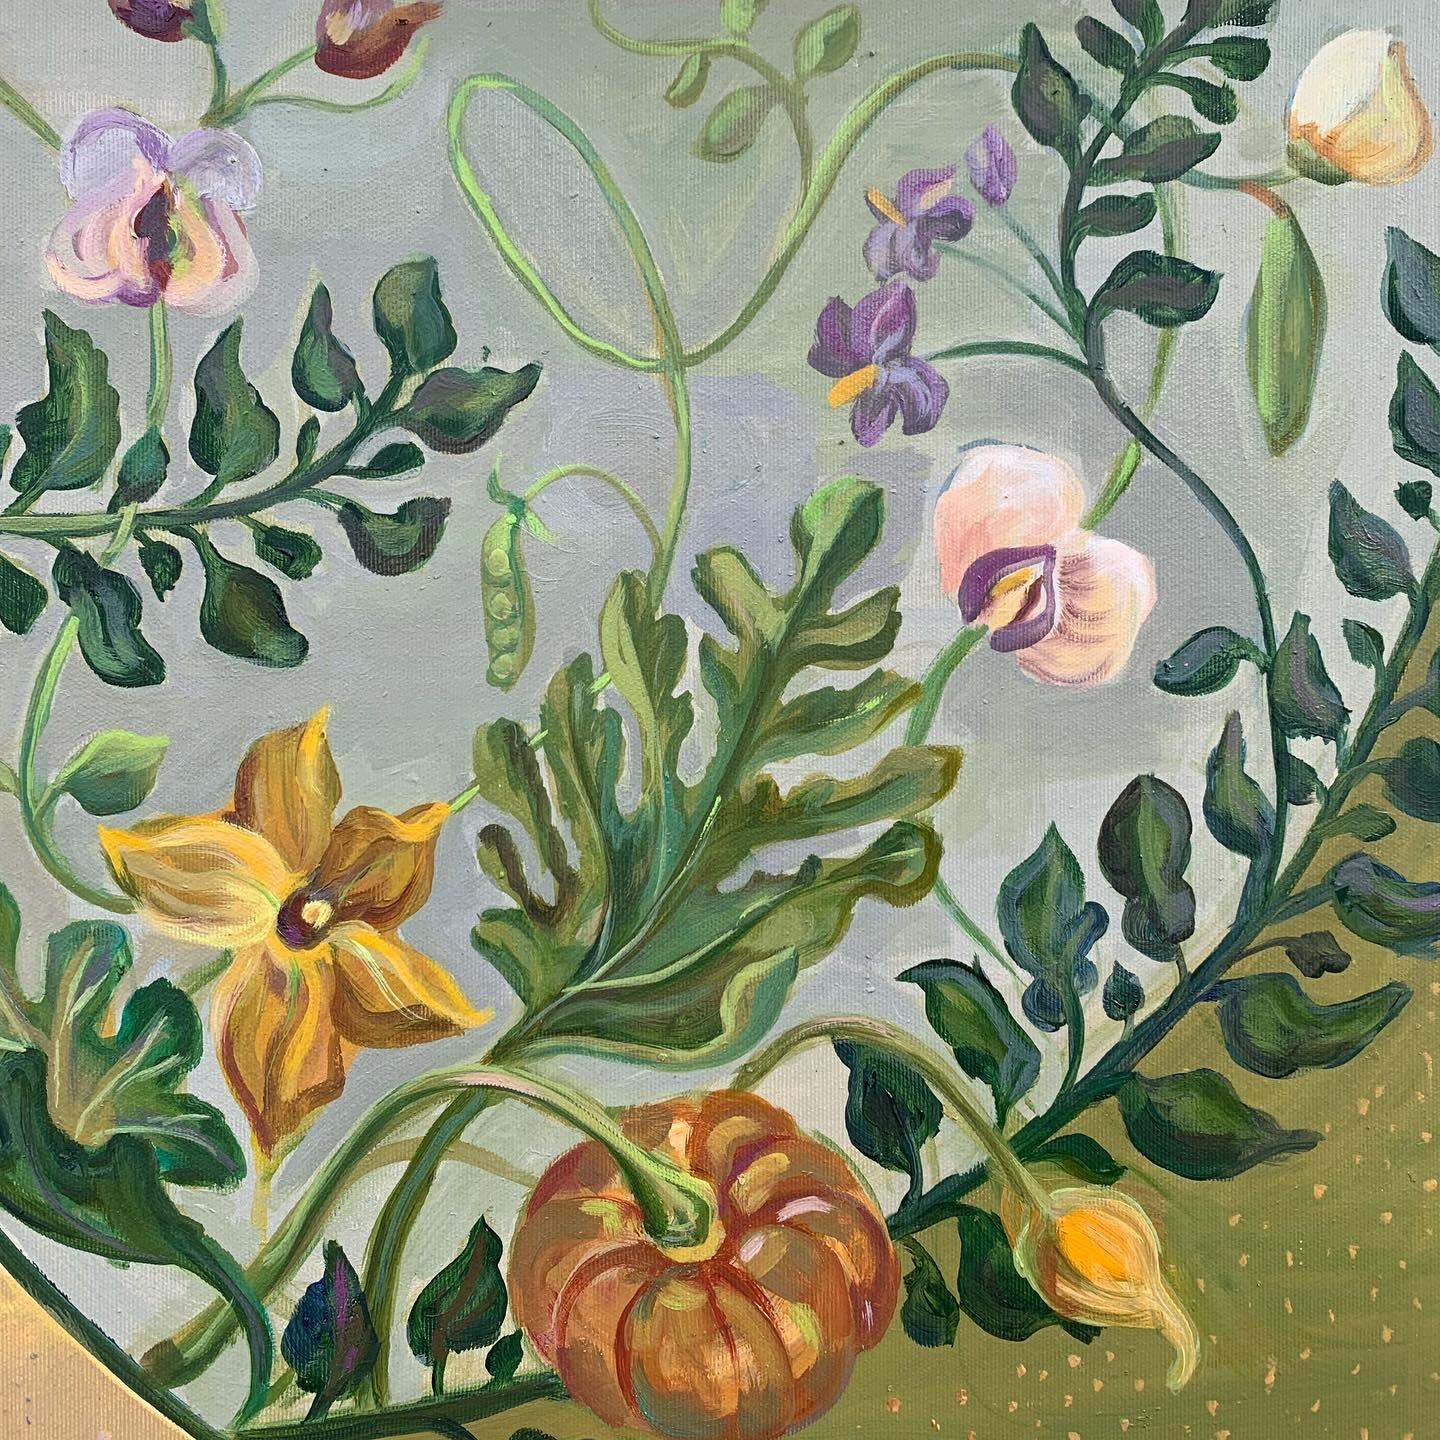 Das friedliche Königreich der Pflanzen. botanisches dekoratives Ölgemälde – Print von Momalyu Liubov